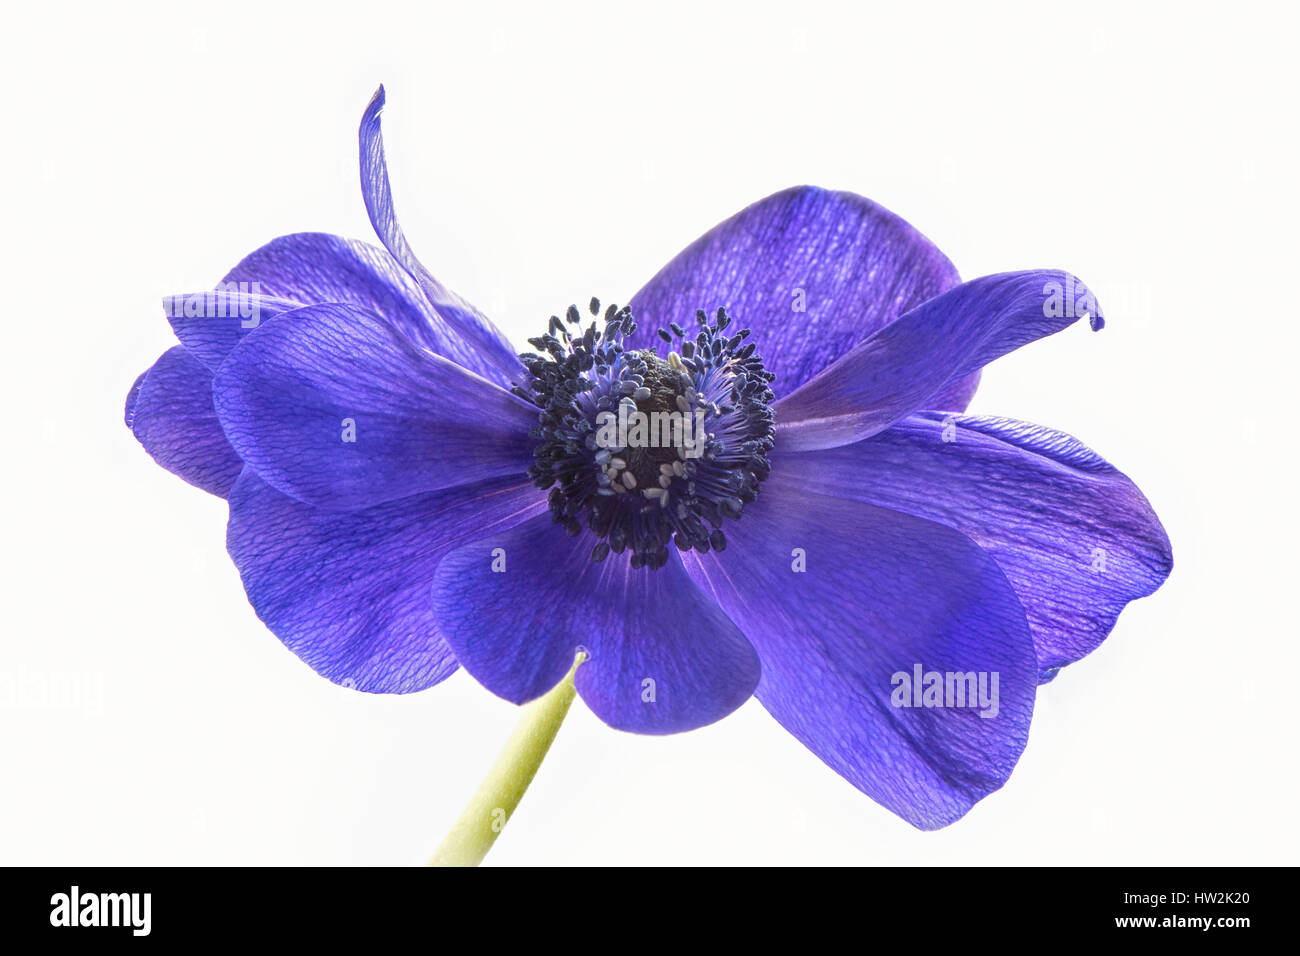 Clave alta imagen de la hermosa primavera anémona de floración de Caen flor violeta, también conocido como el windflower, adoptadas contra un fondo blanco. Foto de stock